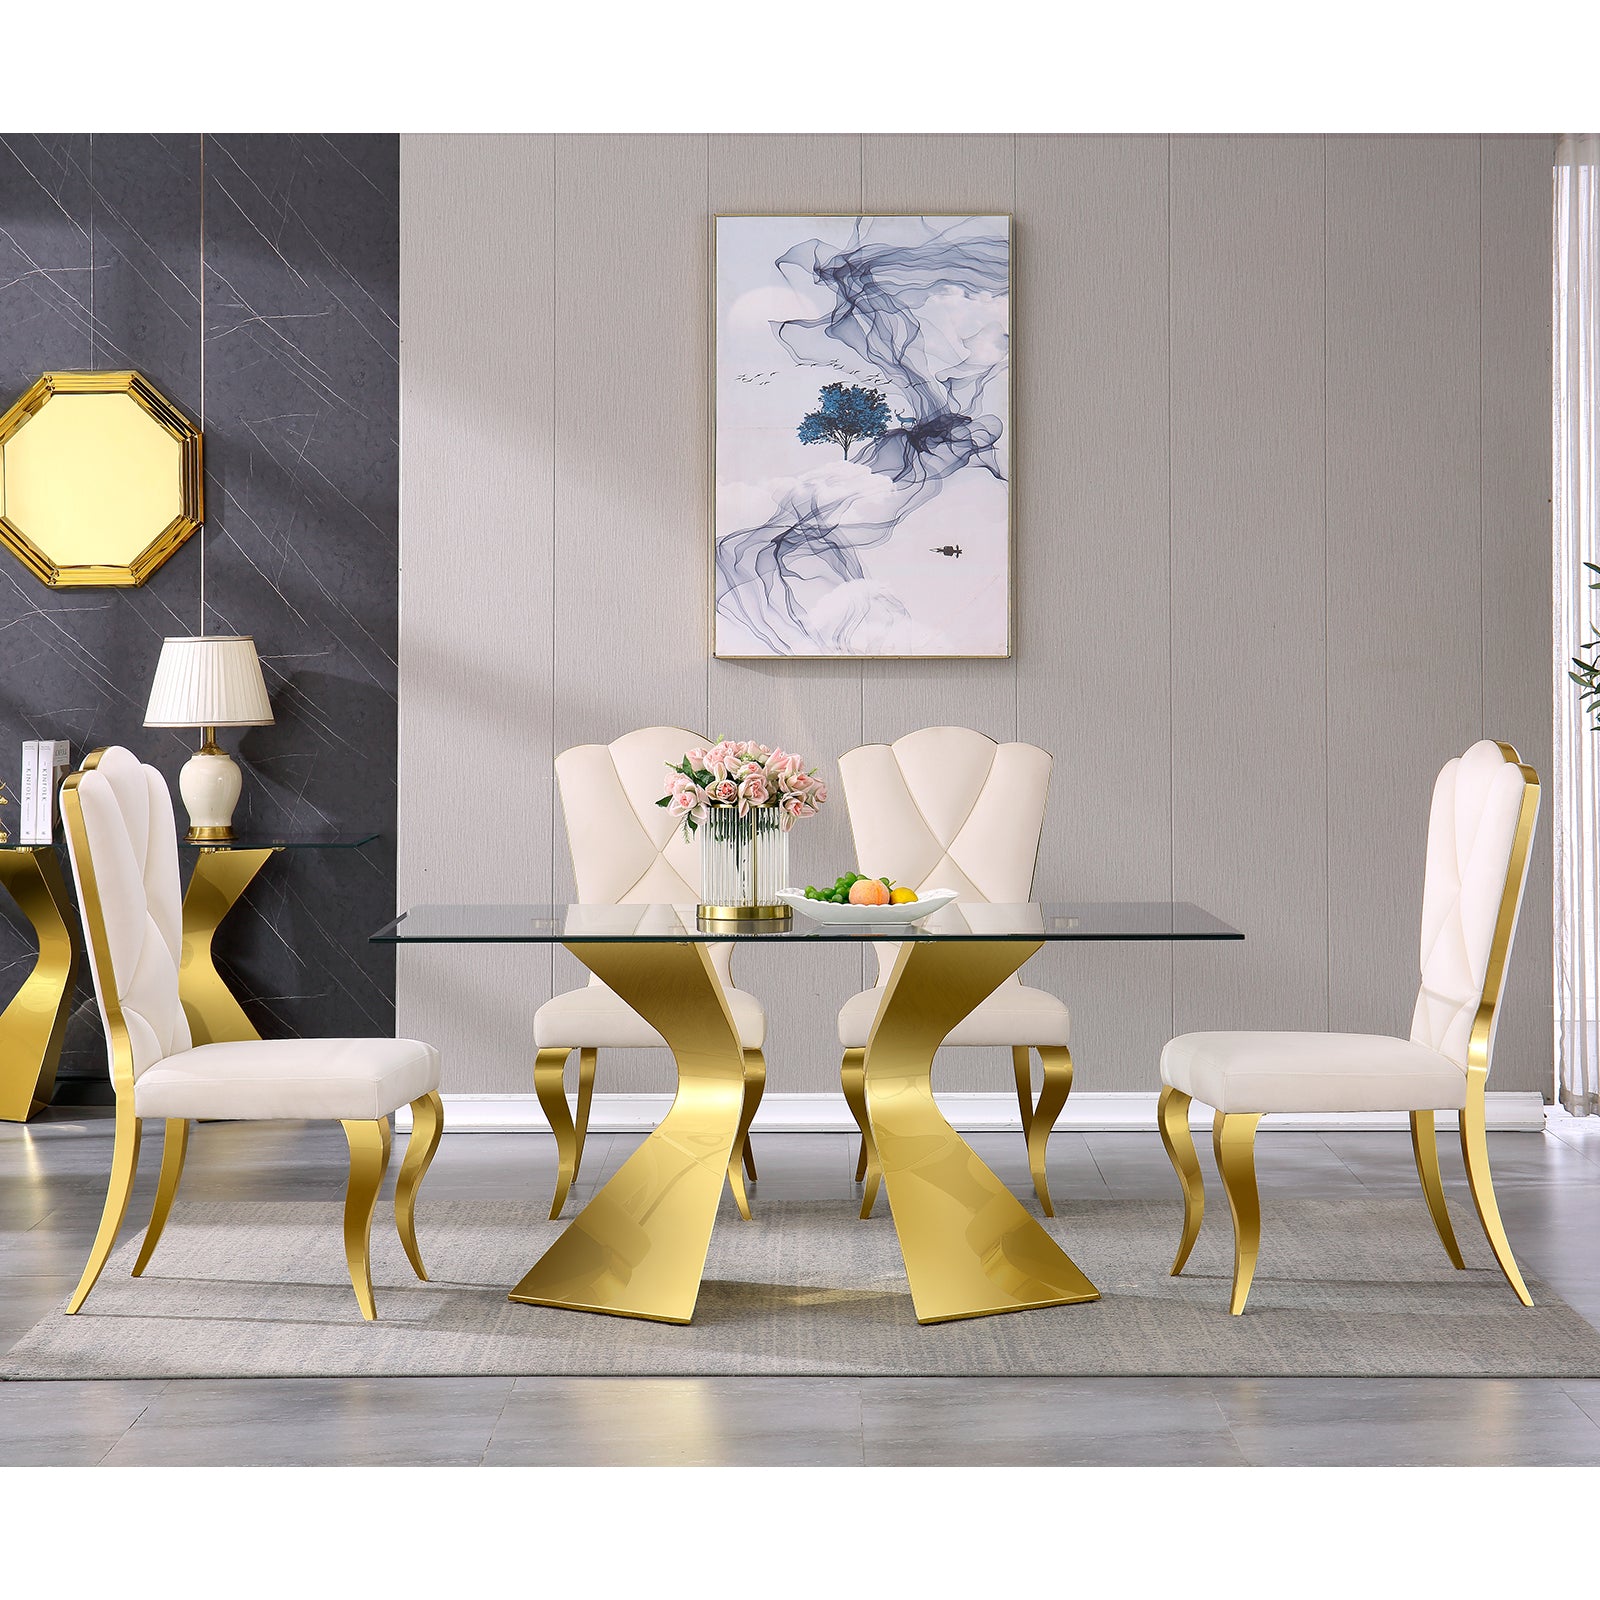 White velvet dining chairs | Cloud backrest design | Gold Metal legs | C142